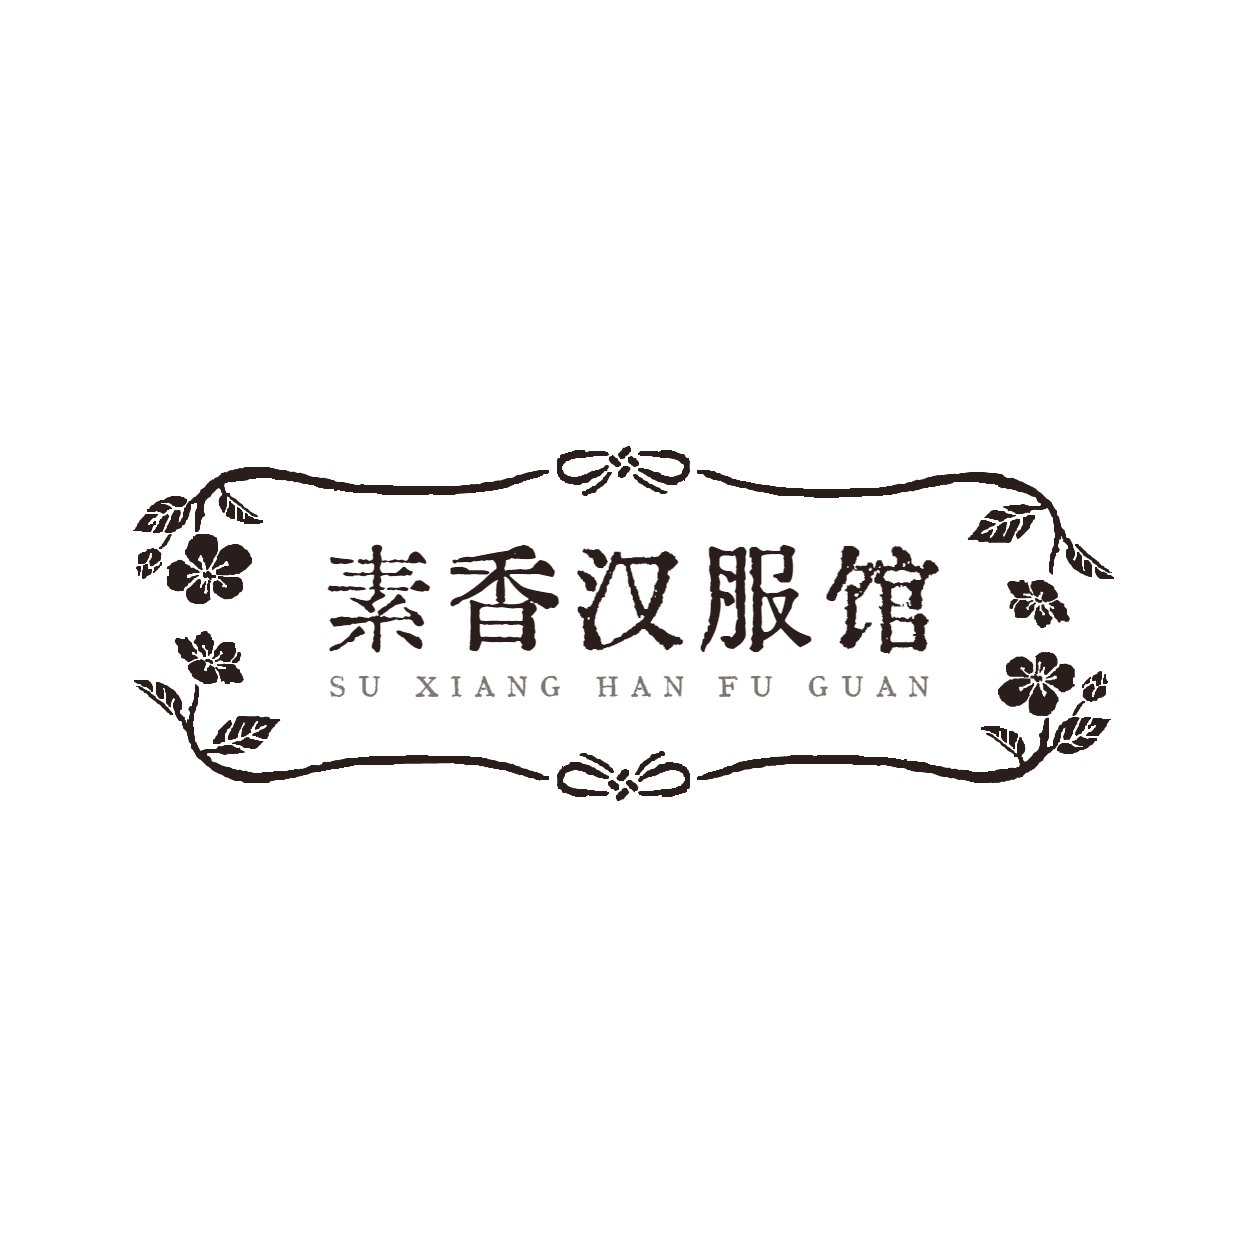 古风传统文化汉服馆logo设计预览效果